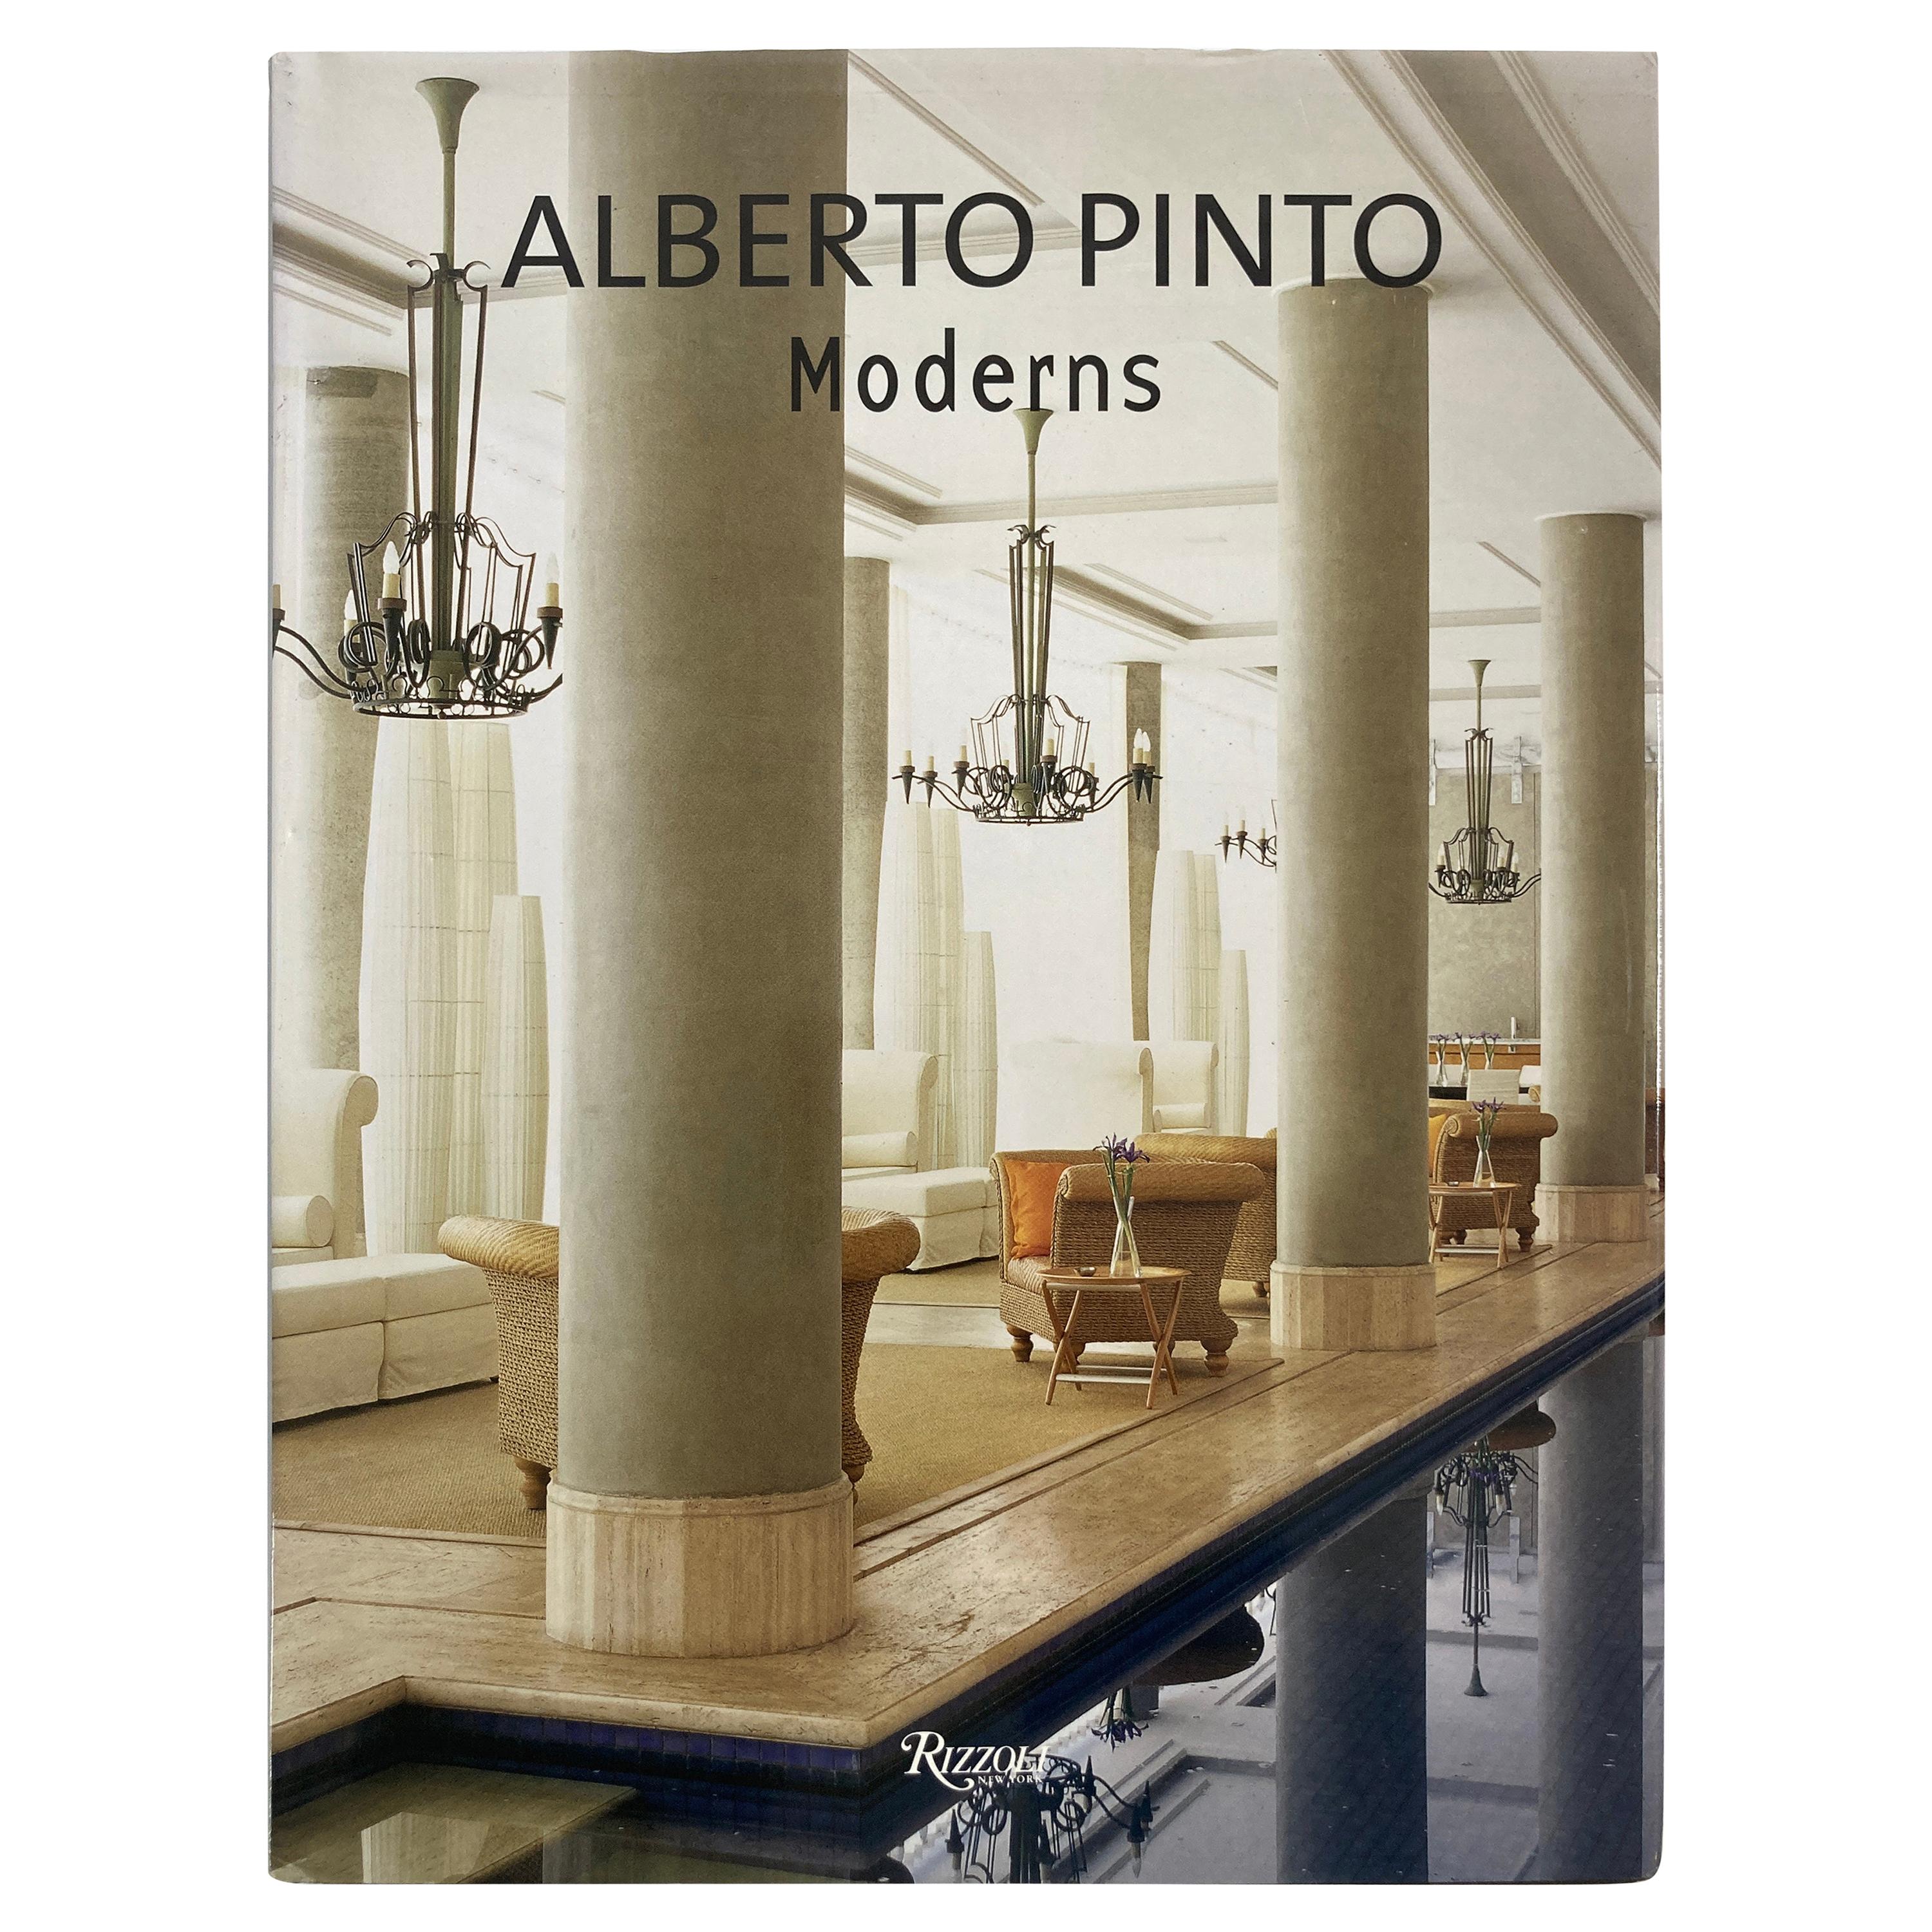 Alberto Pinto Moderns Coffee Table Book